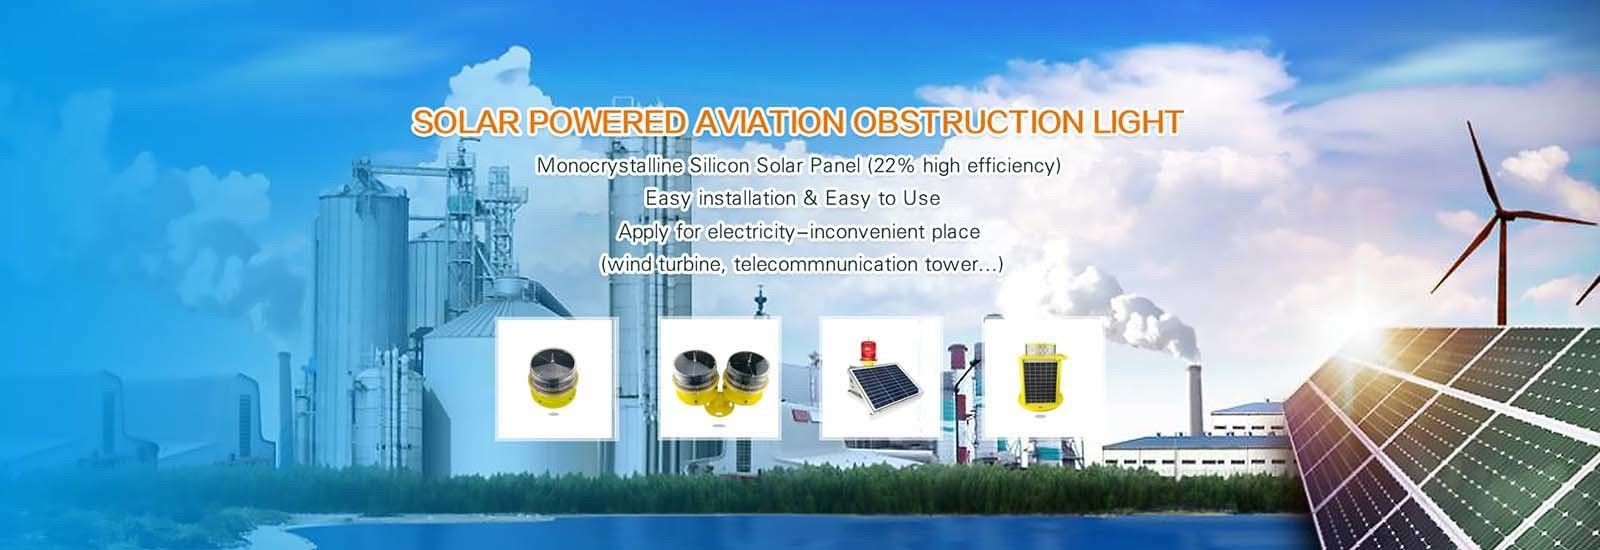 Solar Aviation Obstruction Light